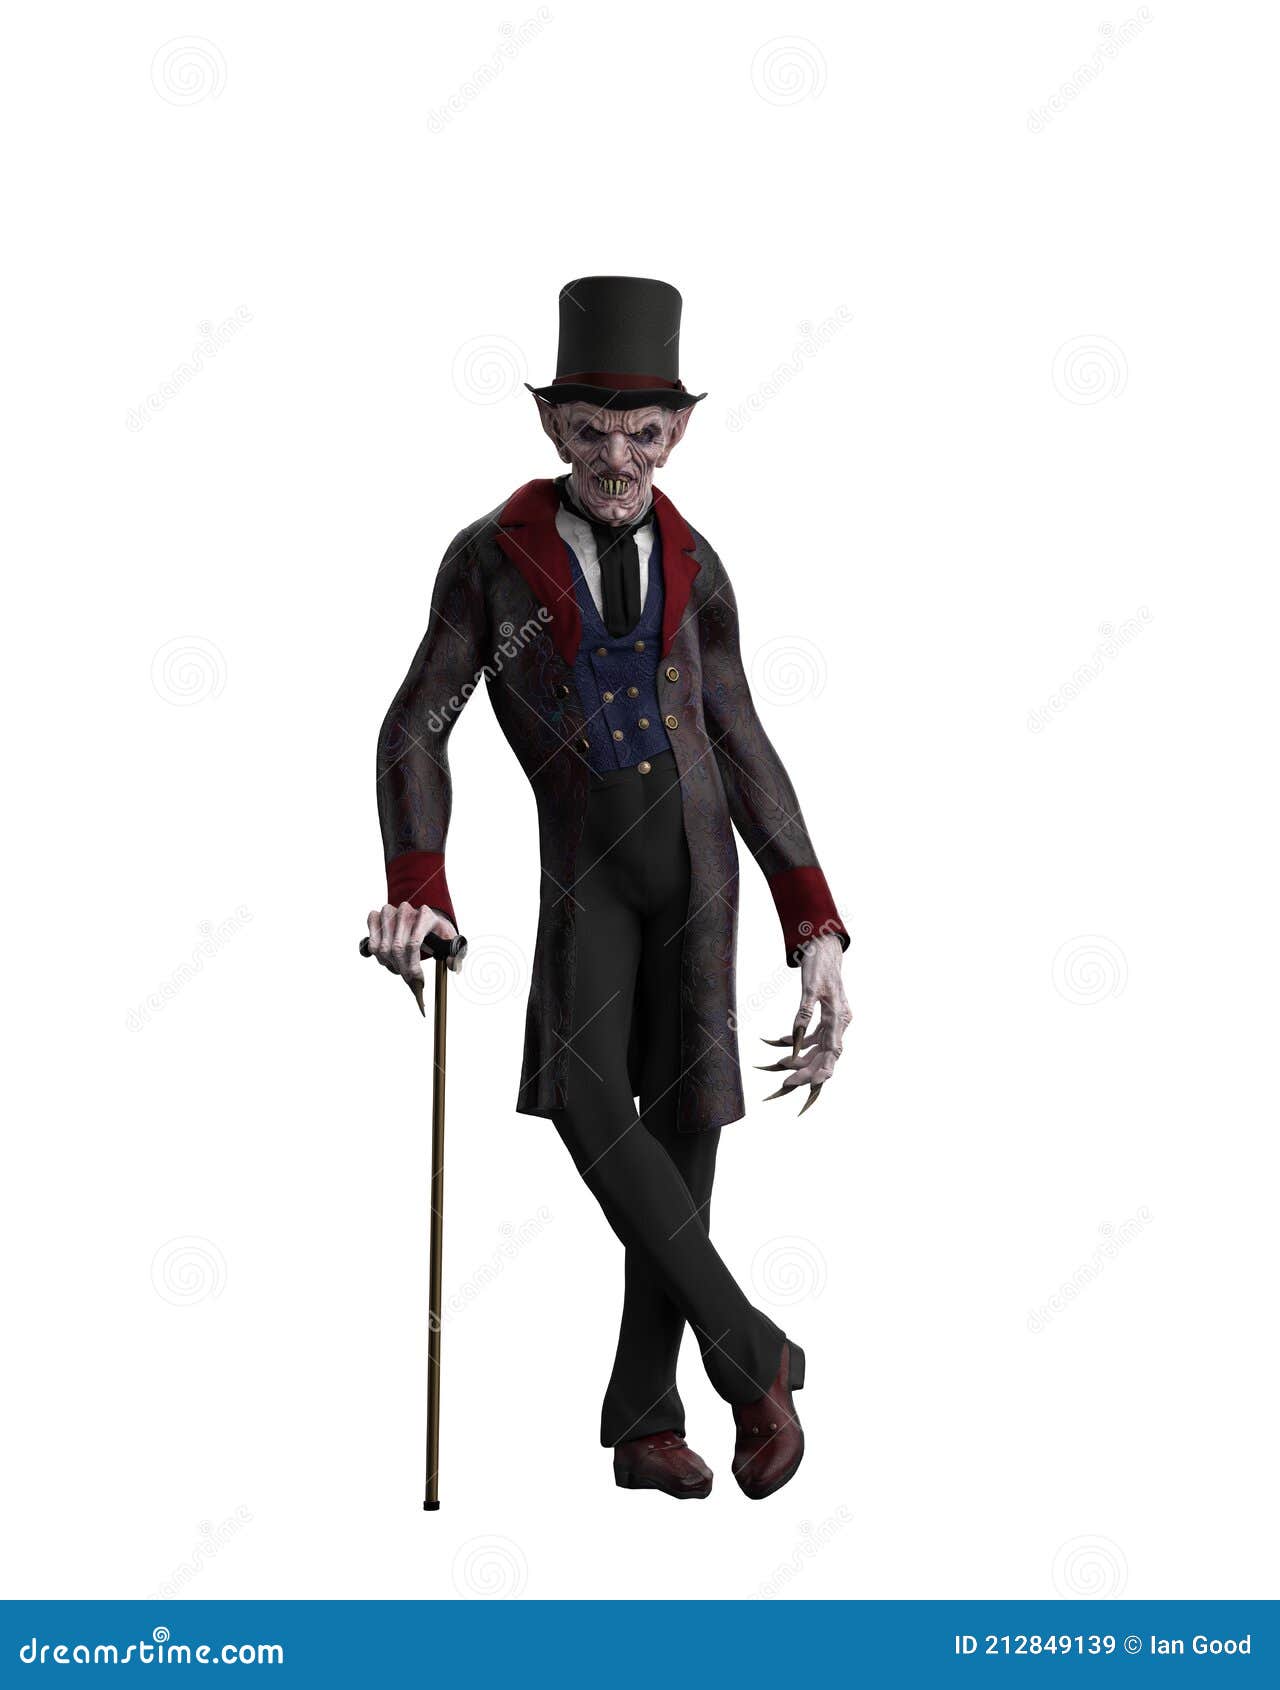 Desenho de um vampiro com um terno preto e um chapéu.